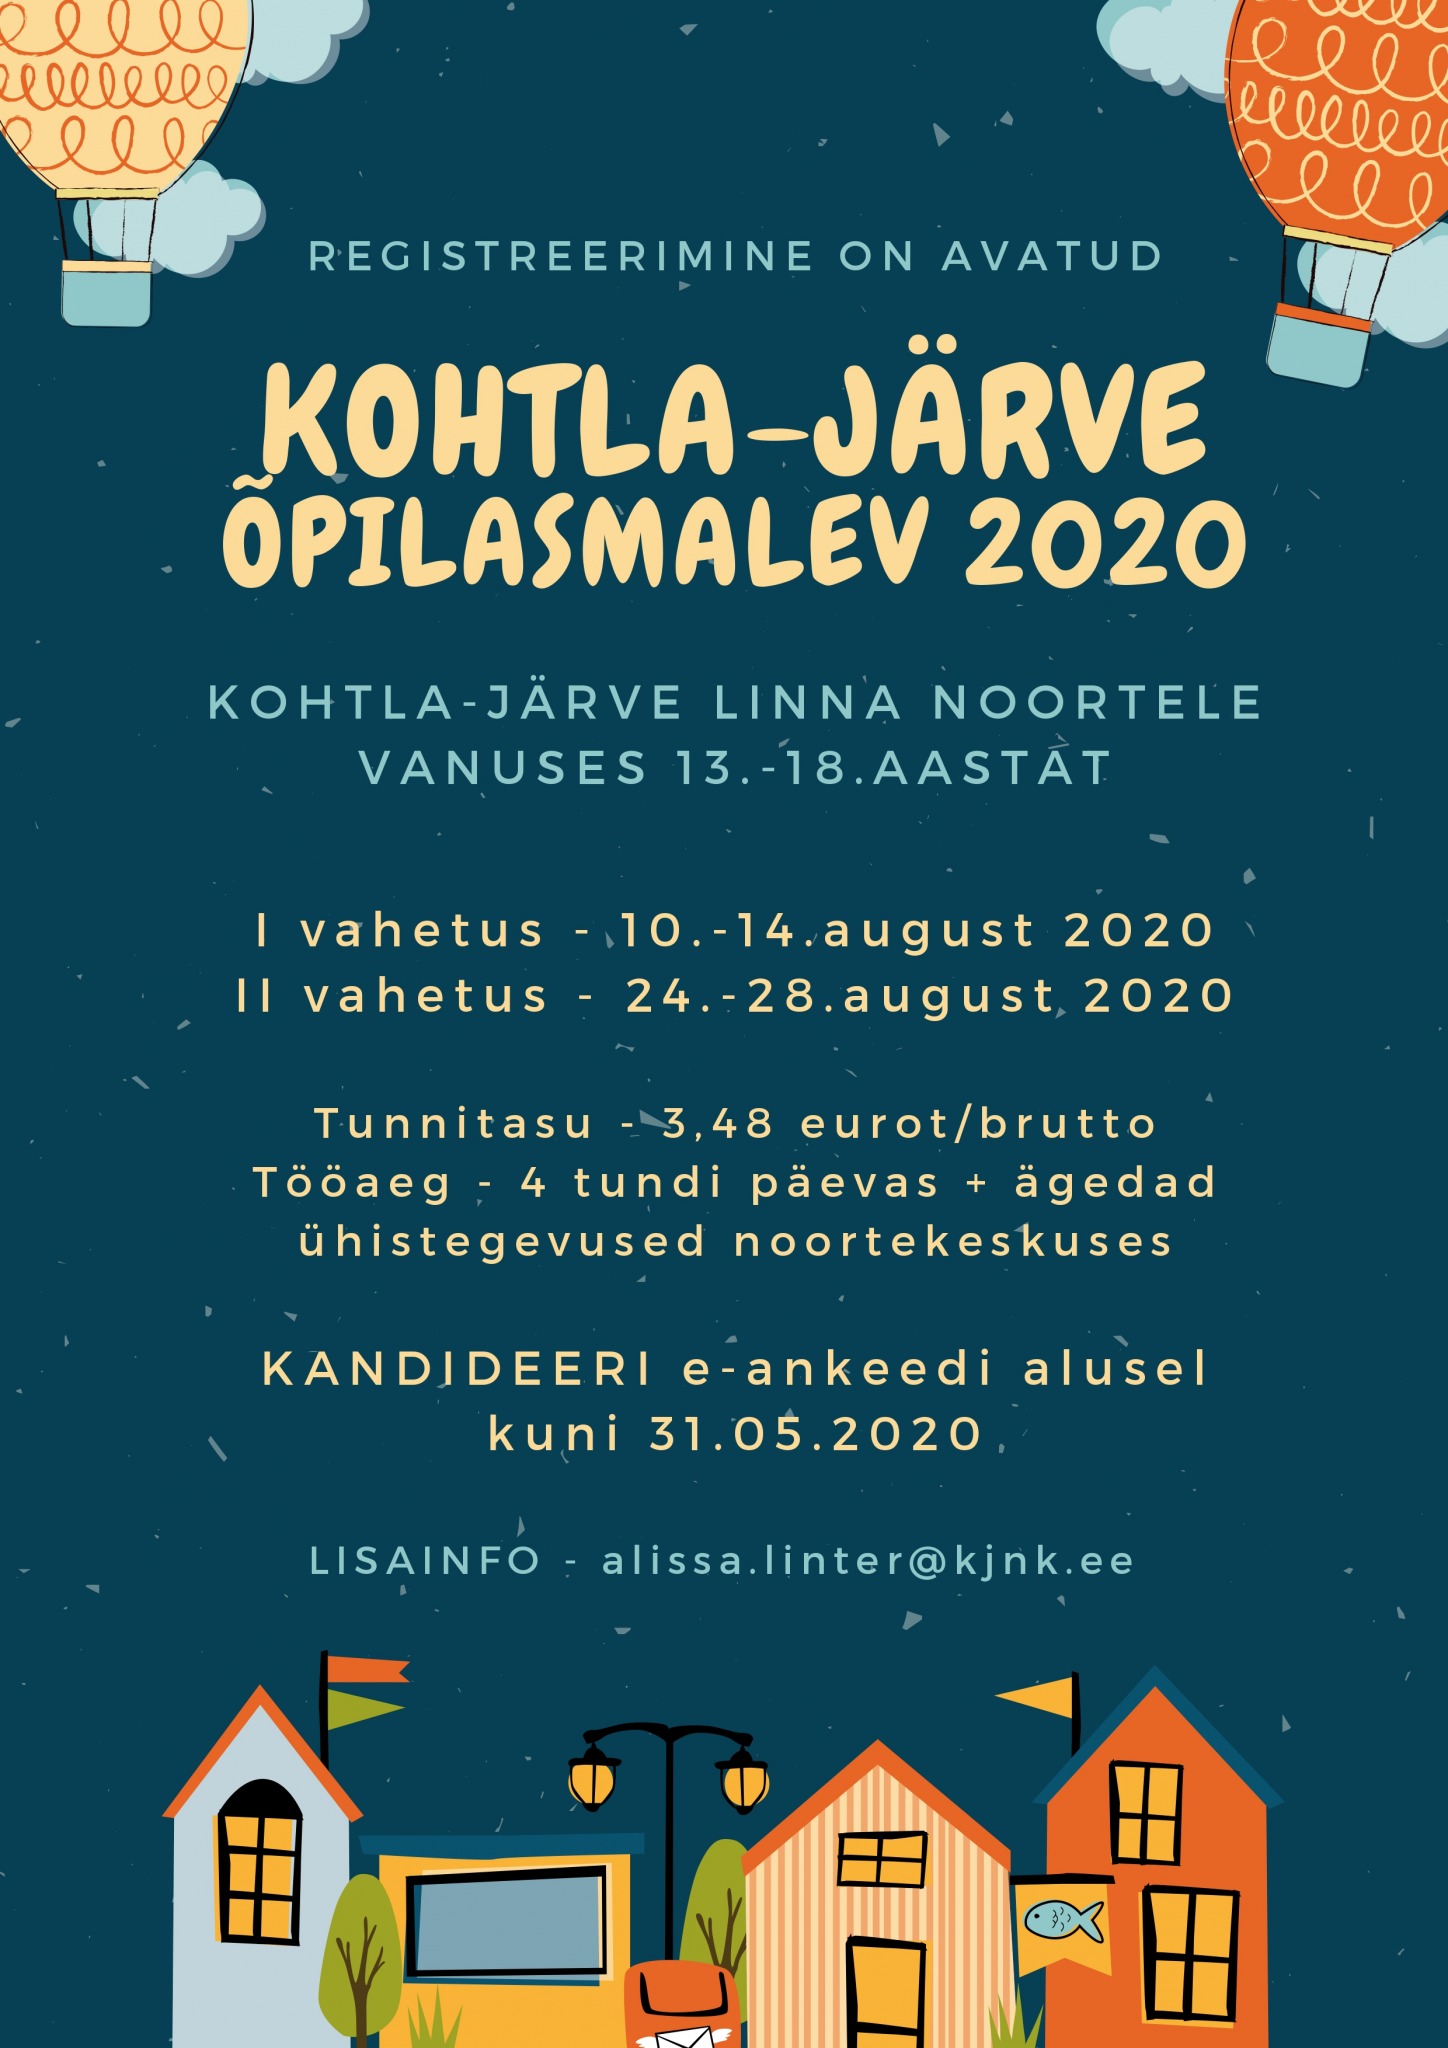 You are currently viewing Kohtla-Järve Õpilasmalev 2020